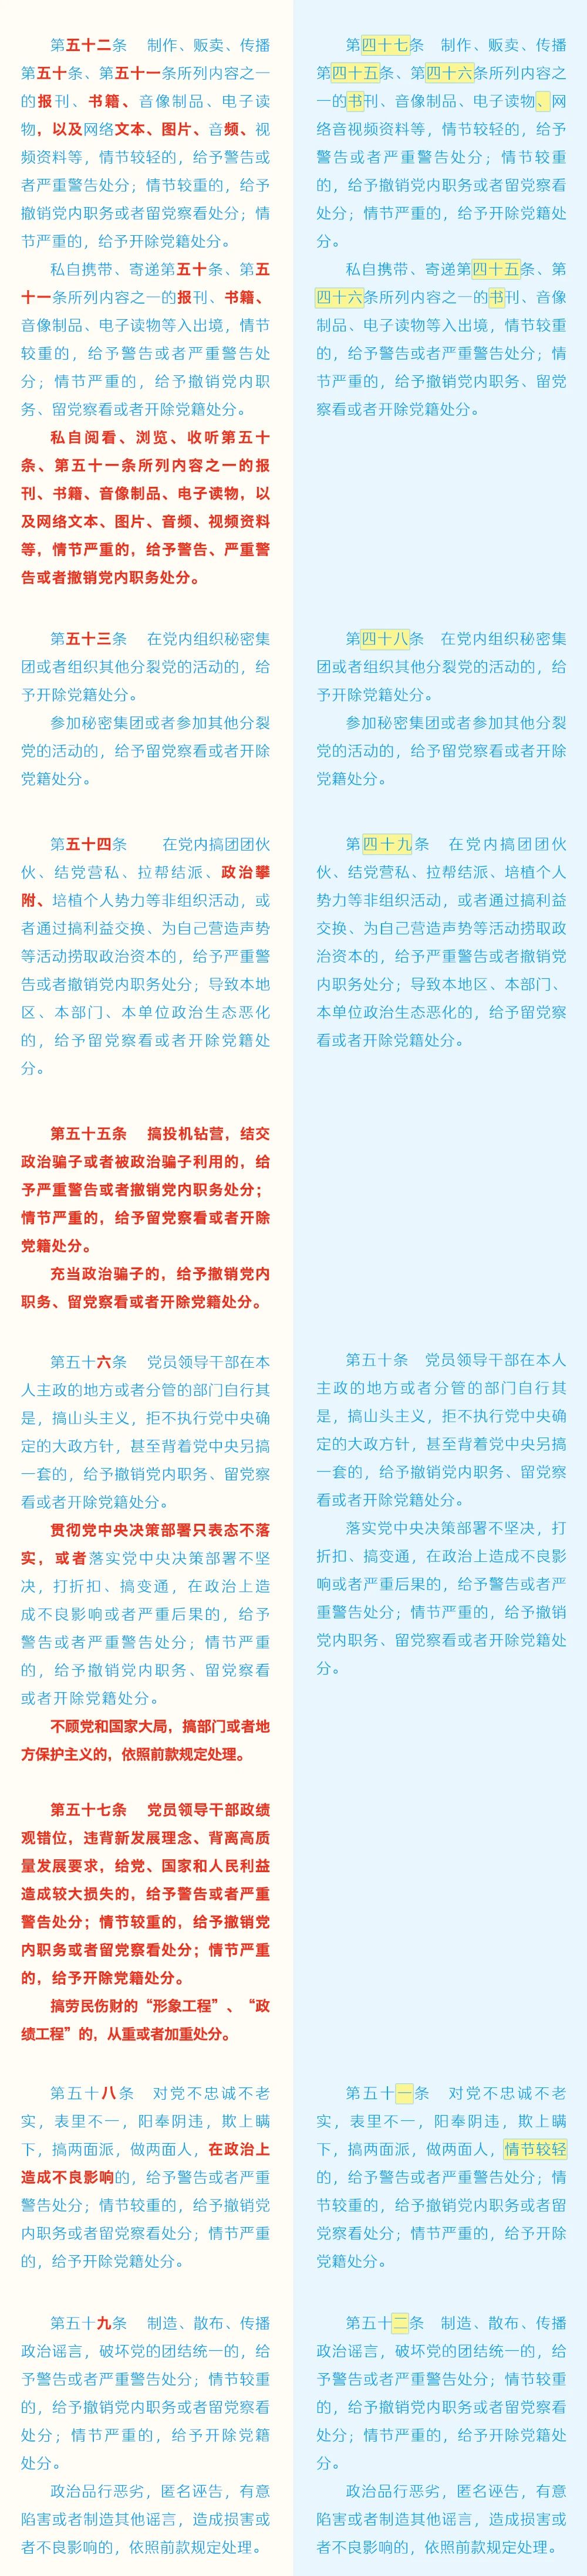 《中国共产党纪律处分条例》修订条文对照表8.jpg